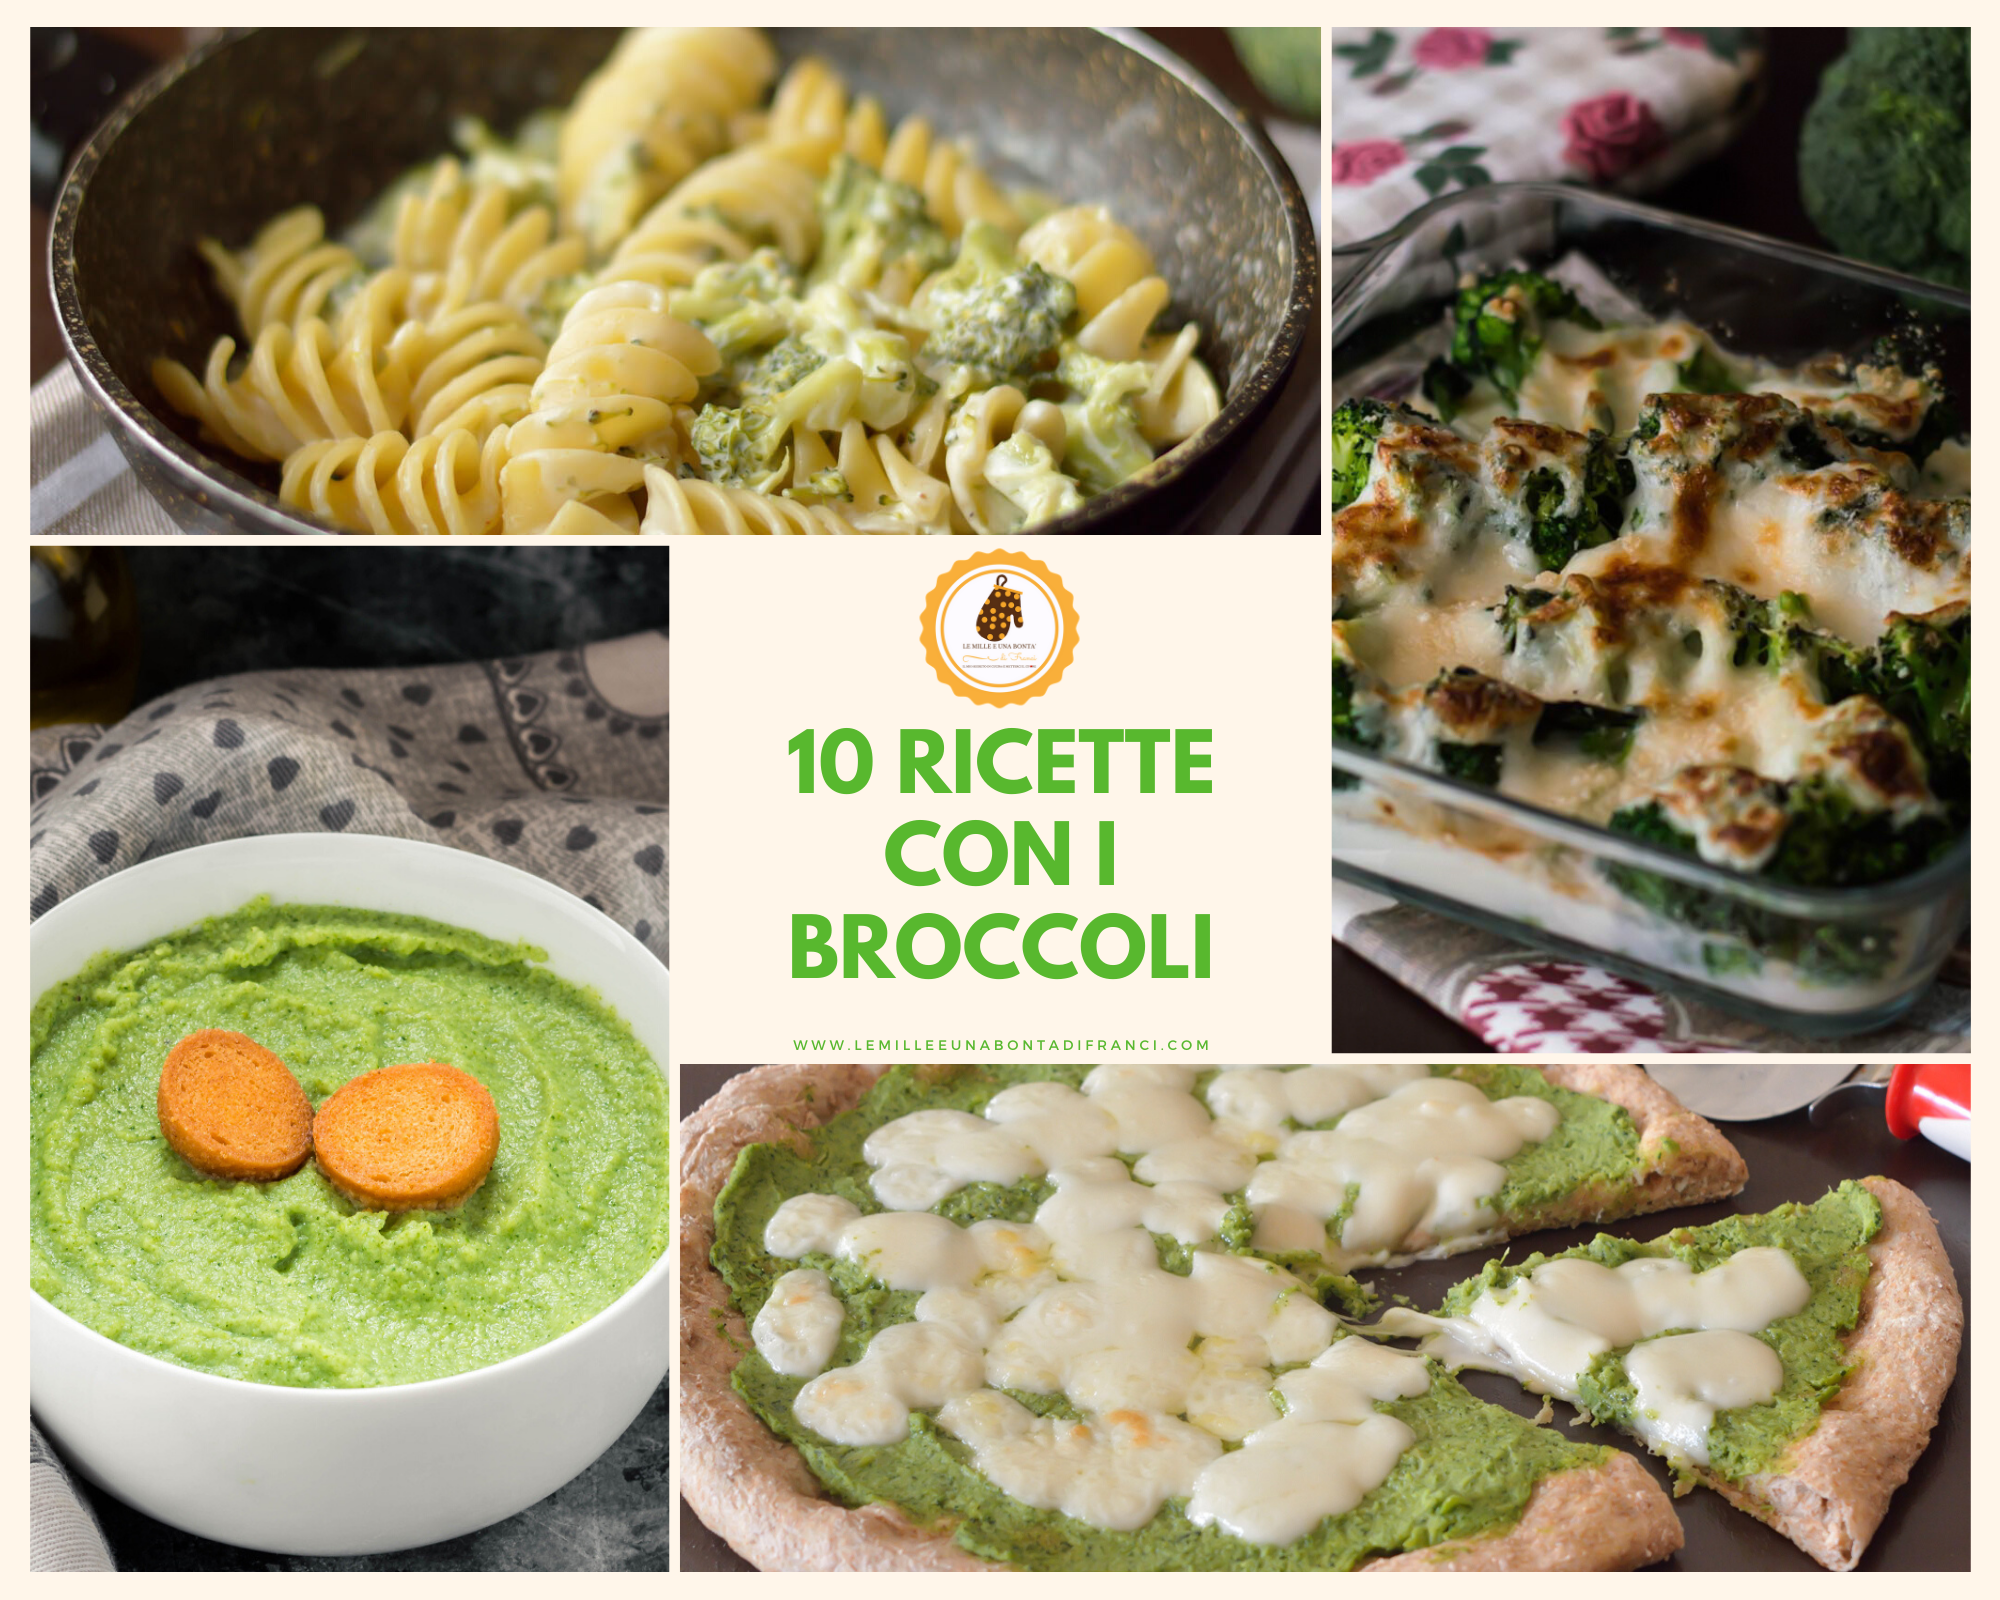 10 ricette con i broccoli